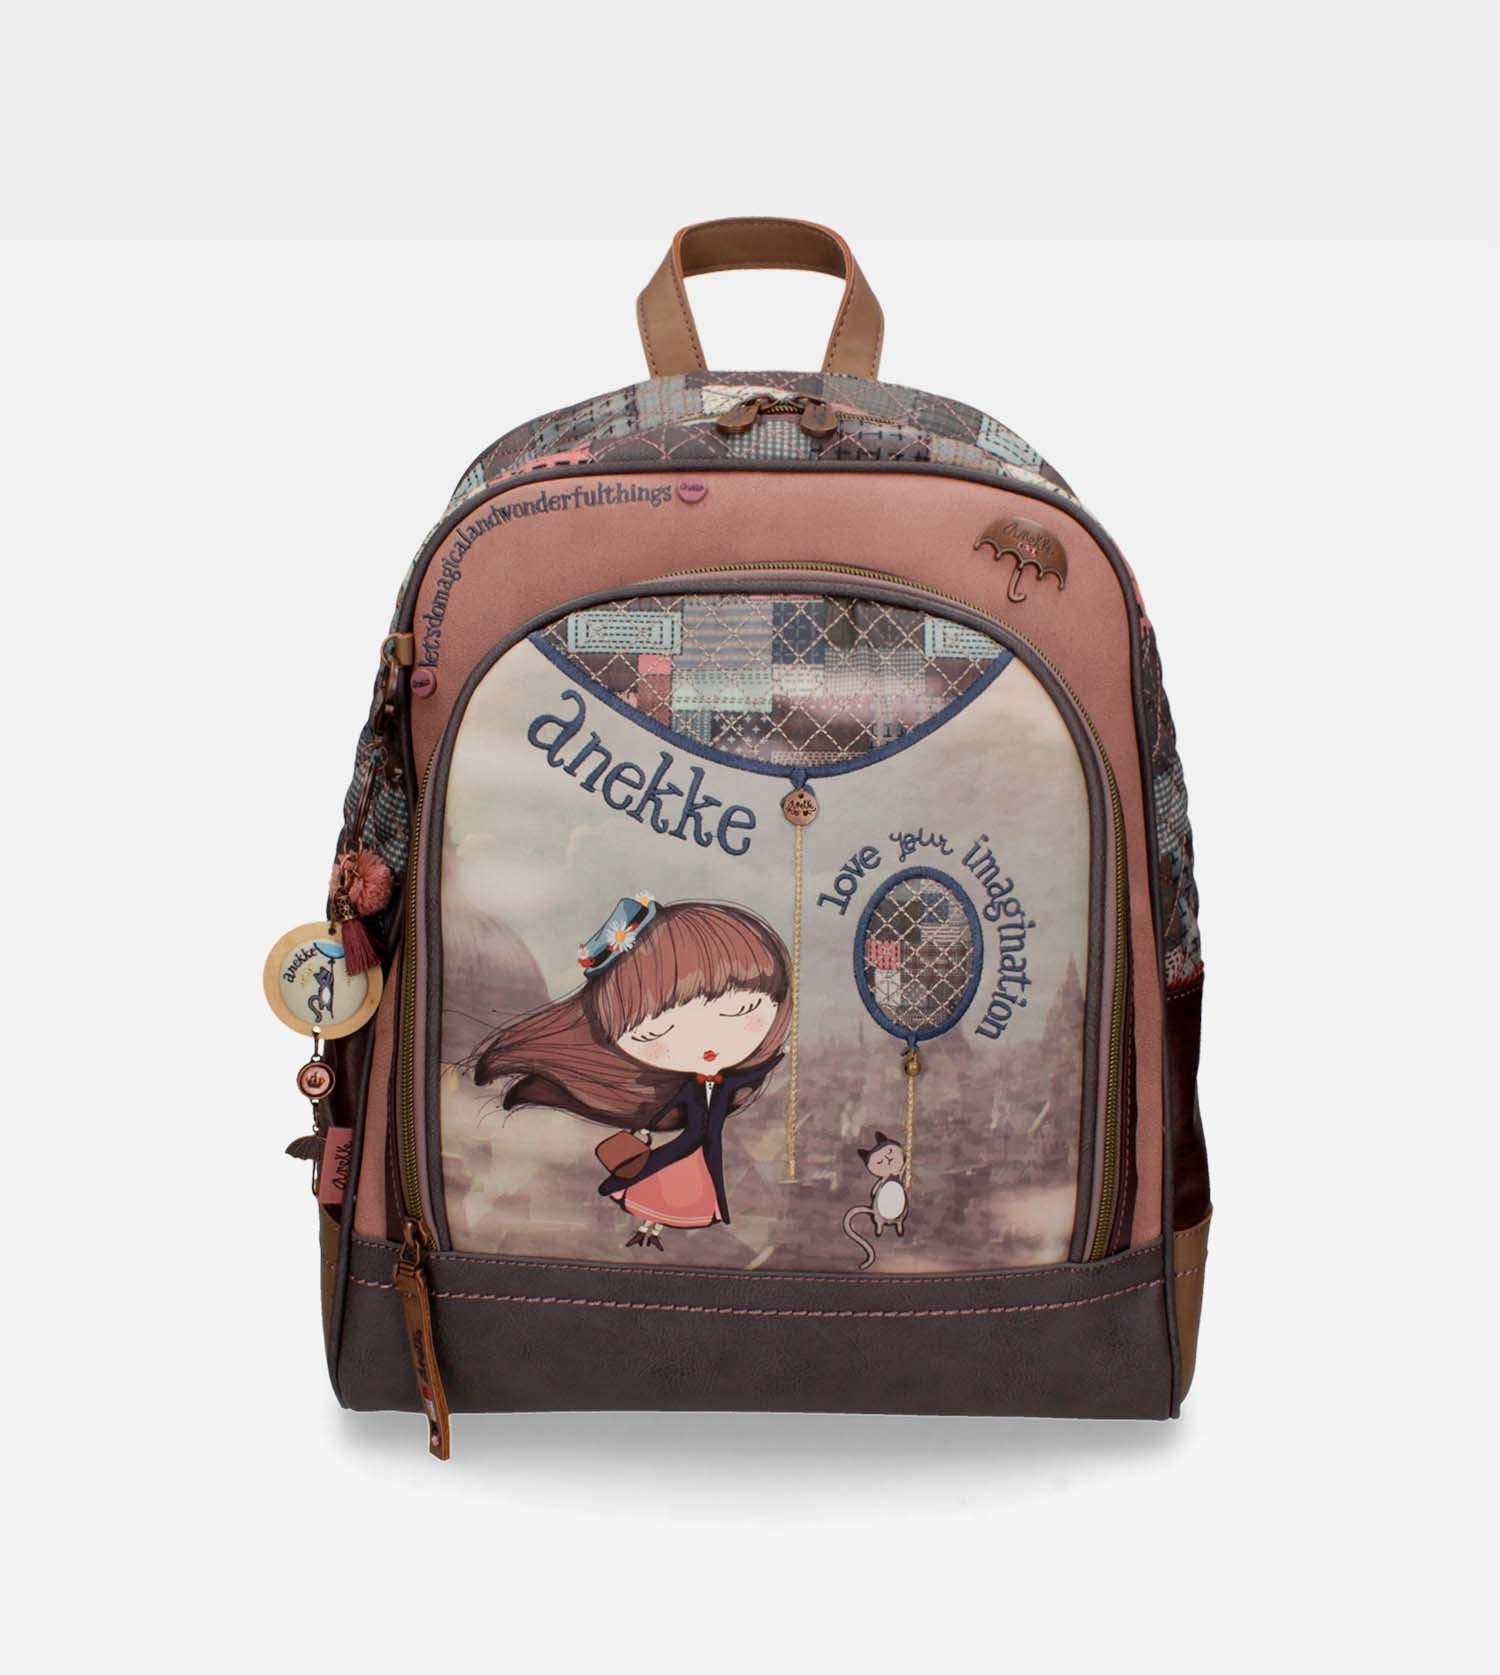 Anekke School Bag - Love Your Imagination